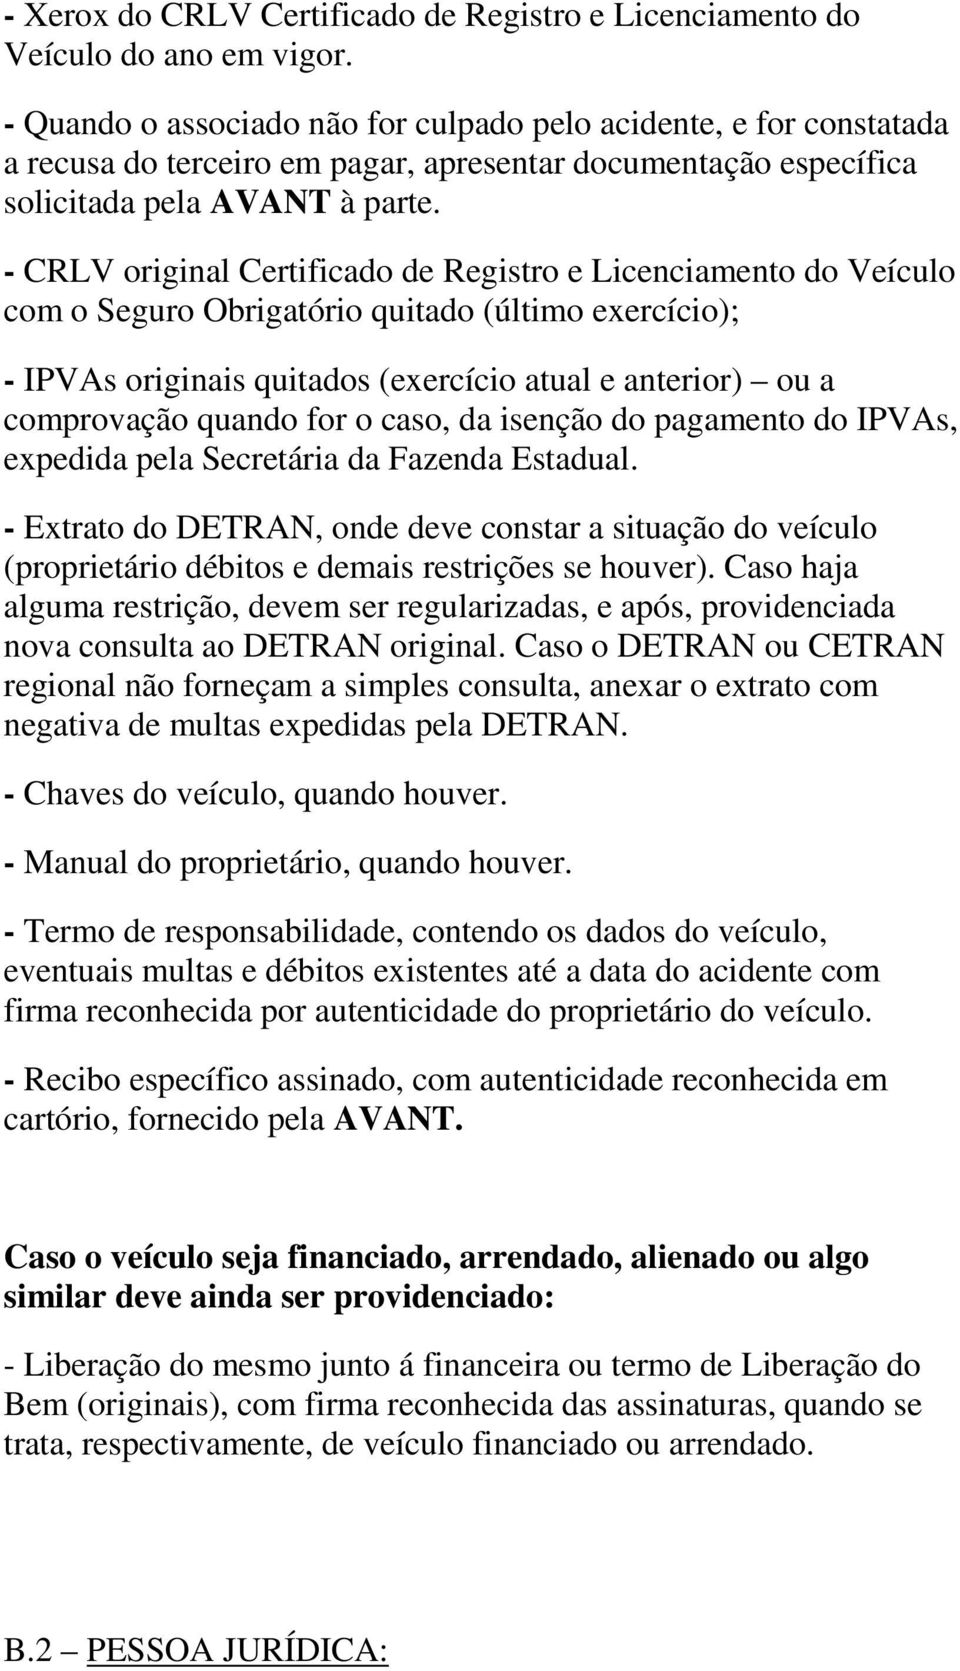 - CRLV original Certificado de Registro e Licenciamento do Veículo com o Seguro Obrigatório quitado (último exercício); - IPVAs originais quitados (exercício atual e anterior) ou a comprovação quando